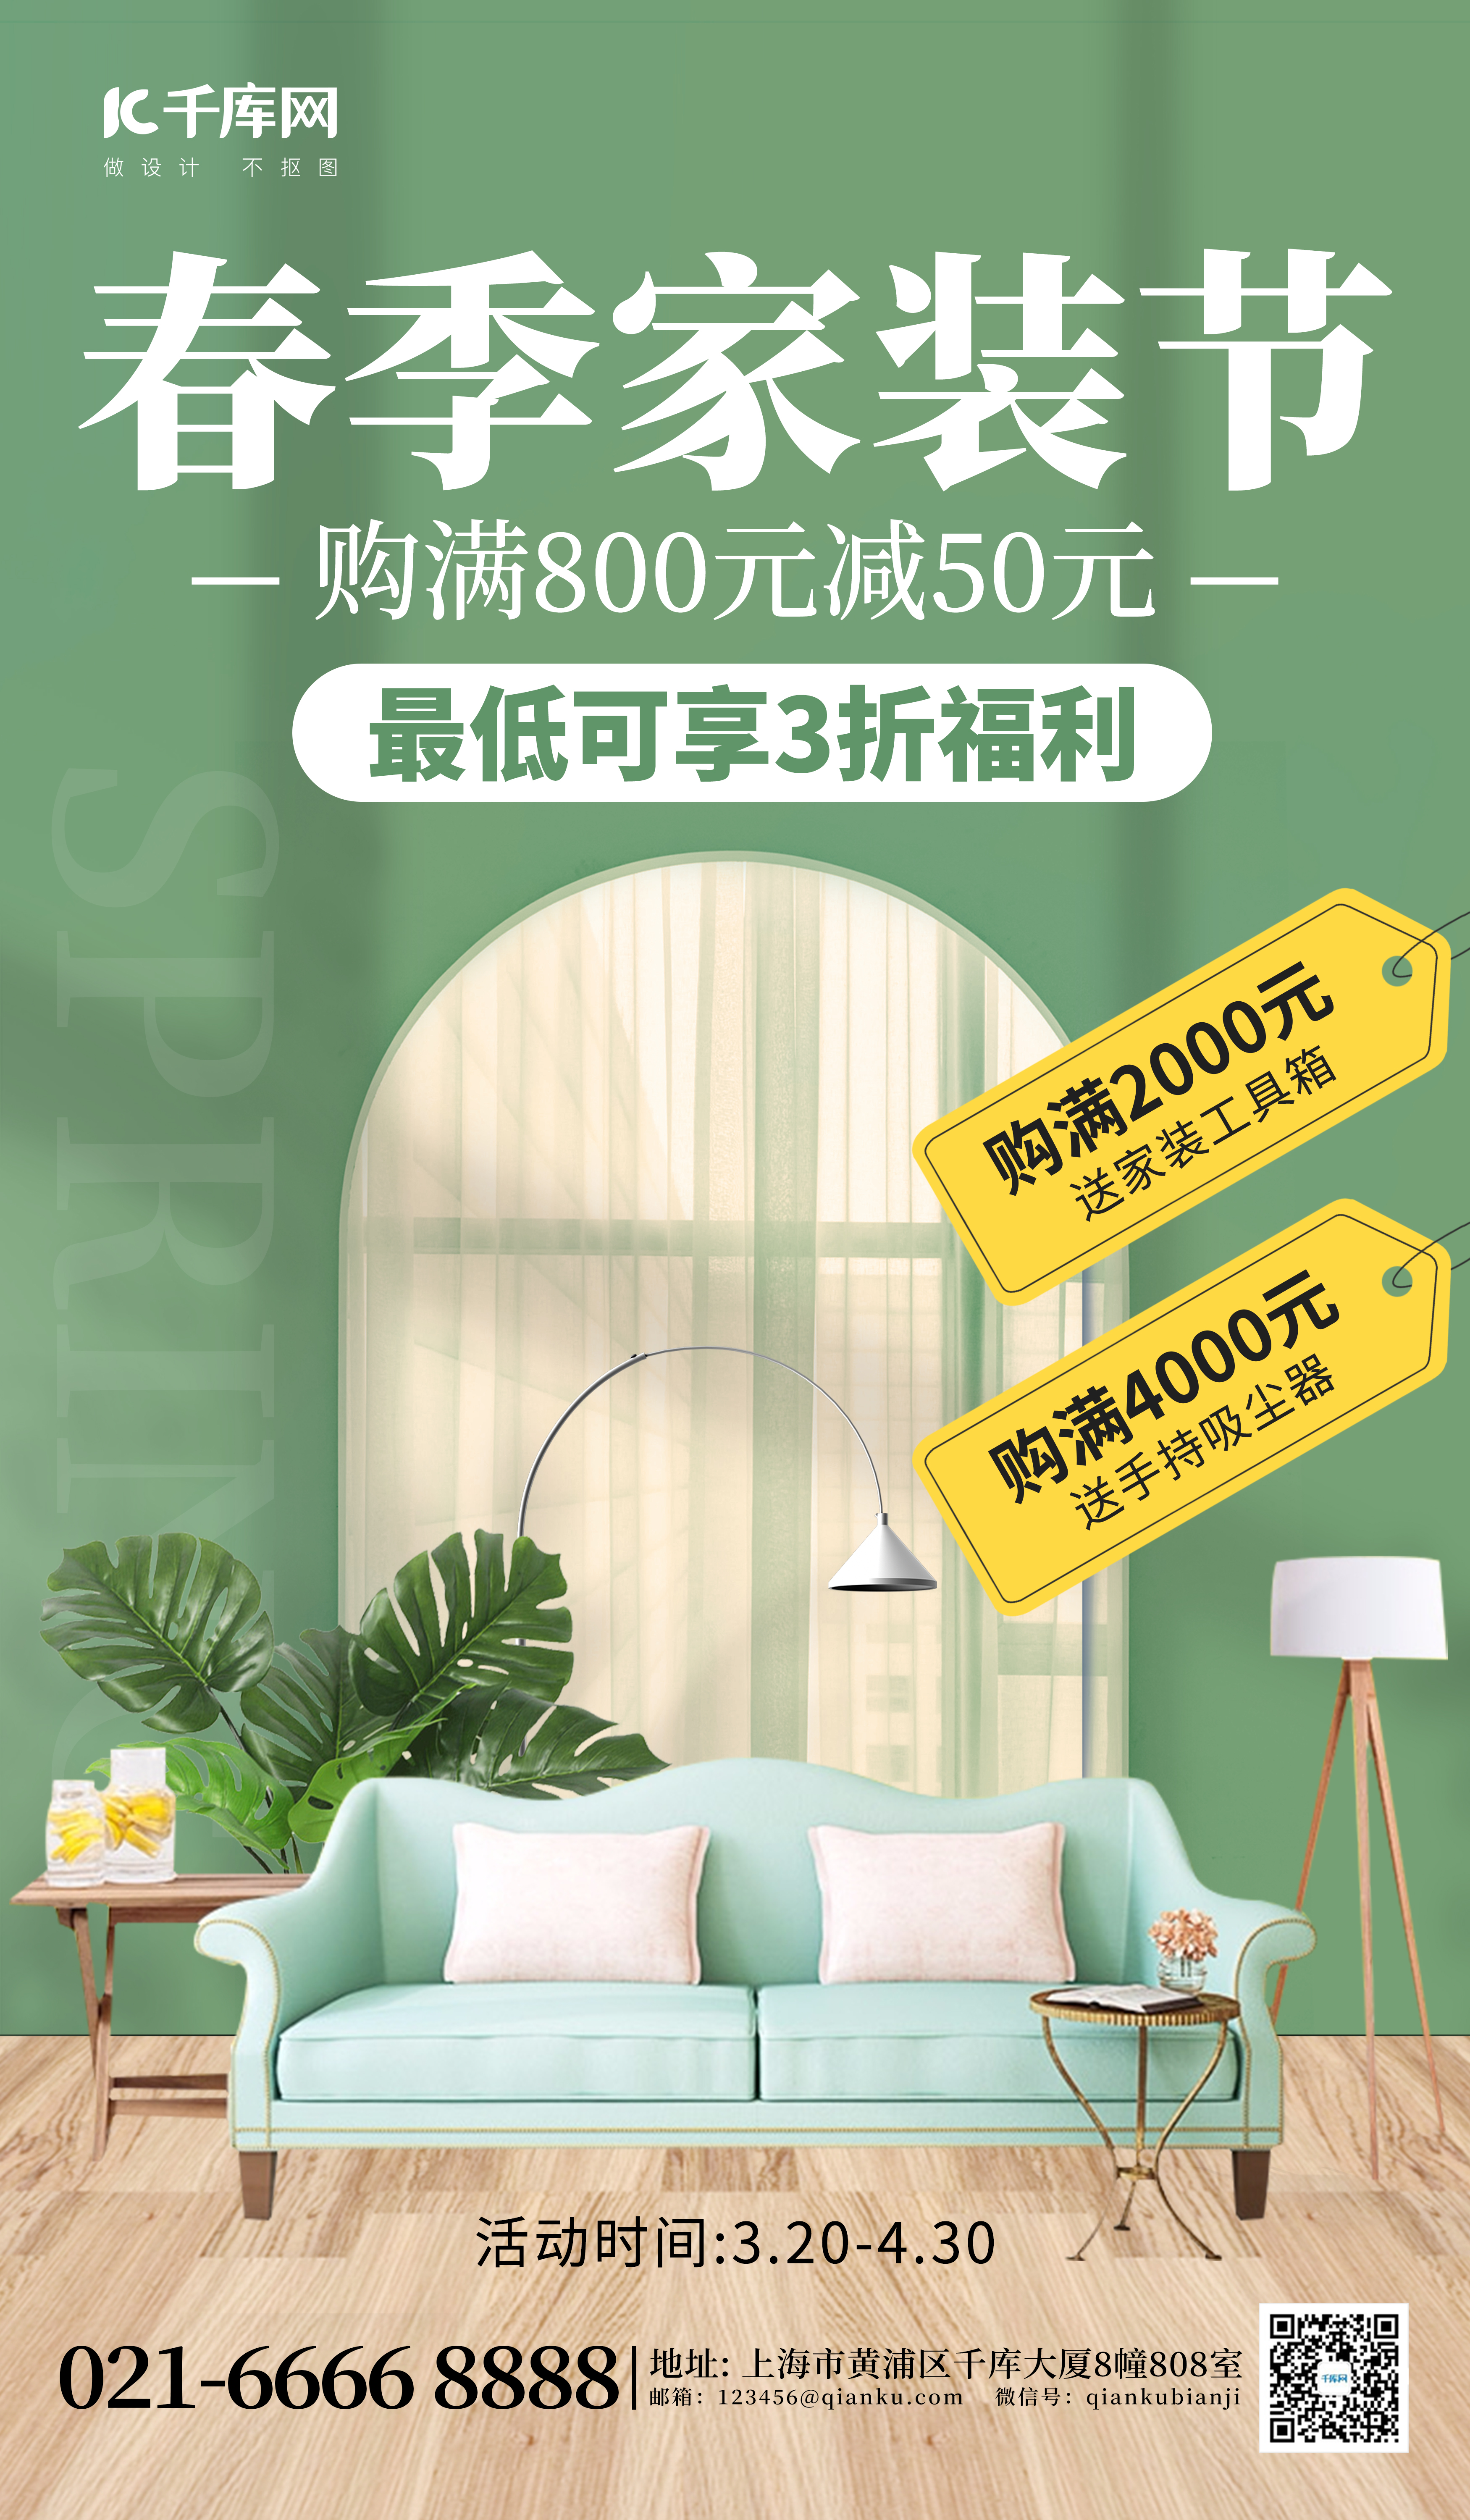 春季家装节沙发绿色创意海报图片